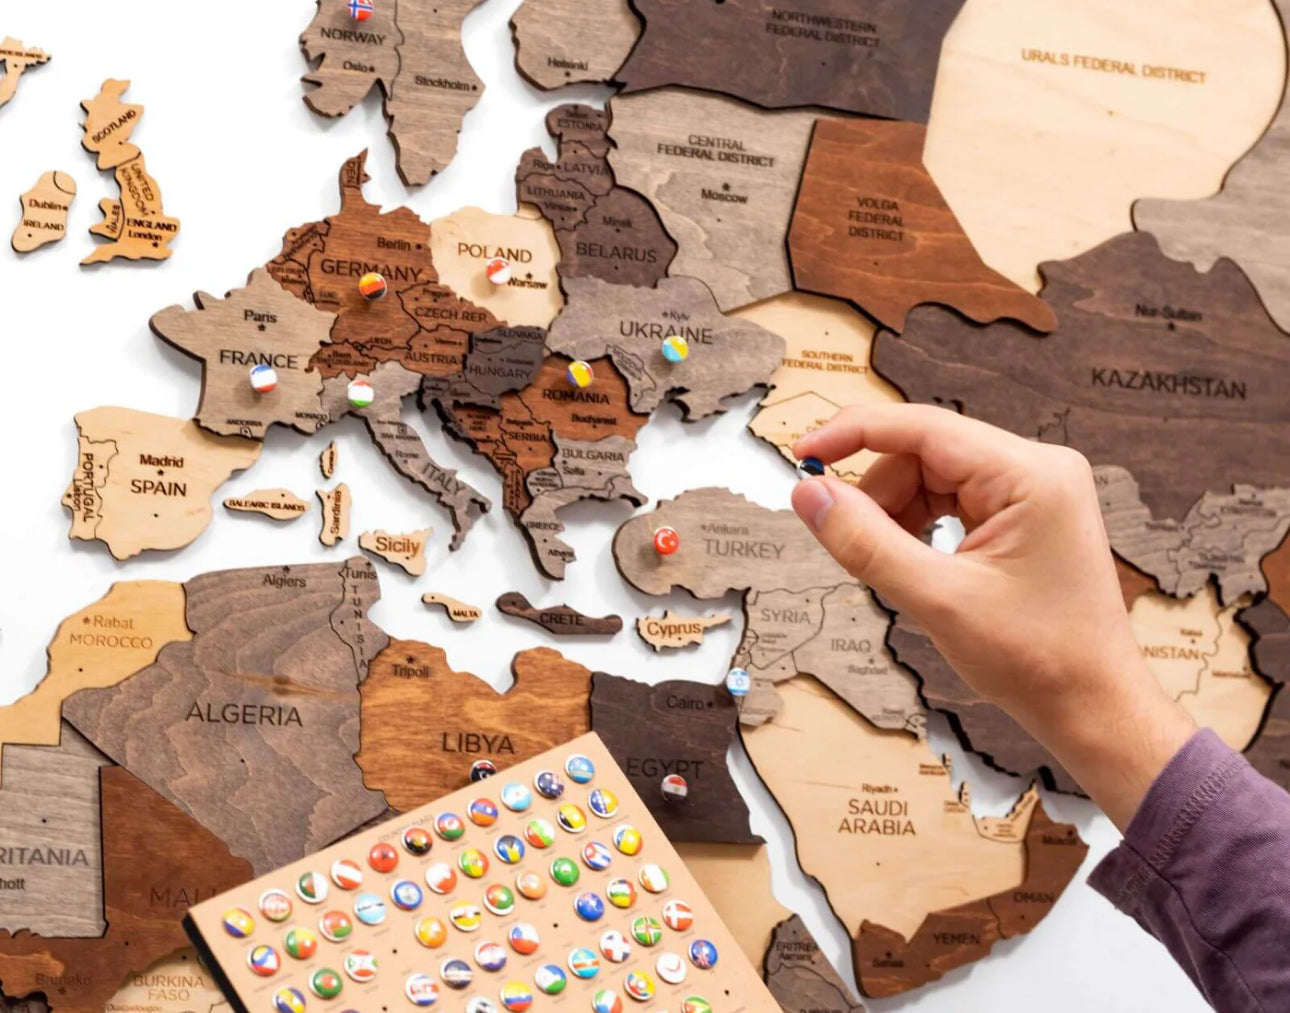 3D Mapa decorativo Multicolor em Madeira 100% natural com oferta de placa com pins de bandeiras de todos os países do mundo (287) oferta de lançamento do novo site!